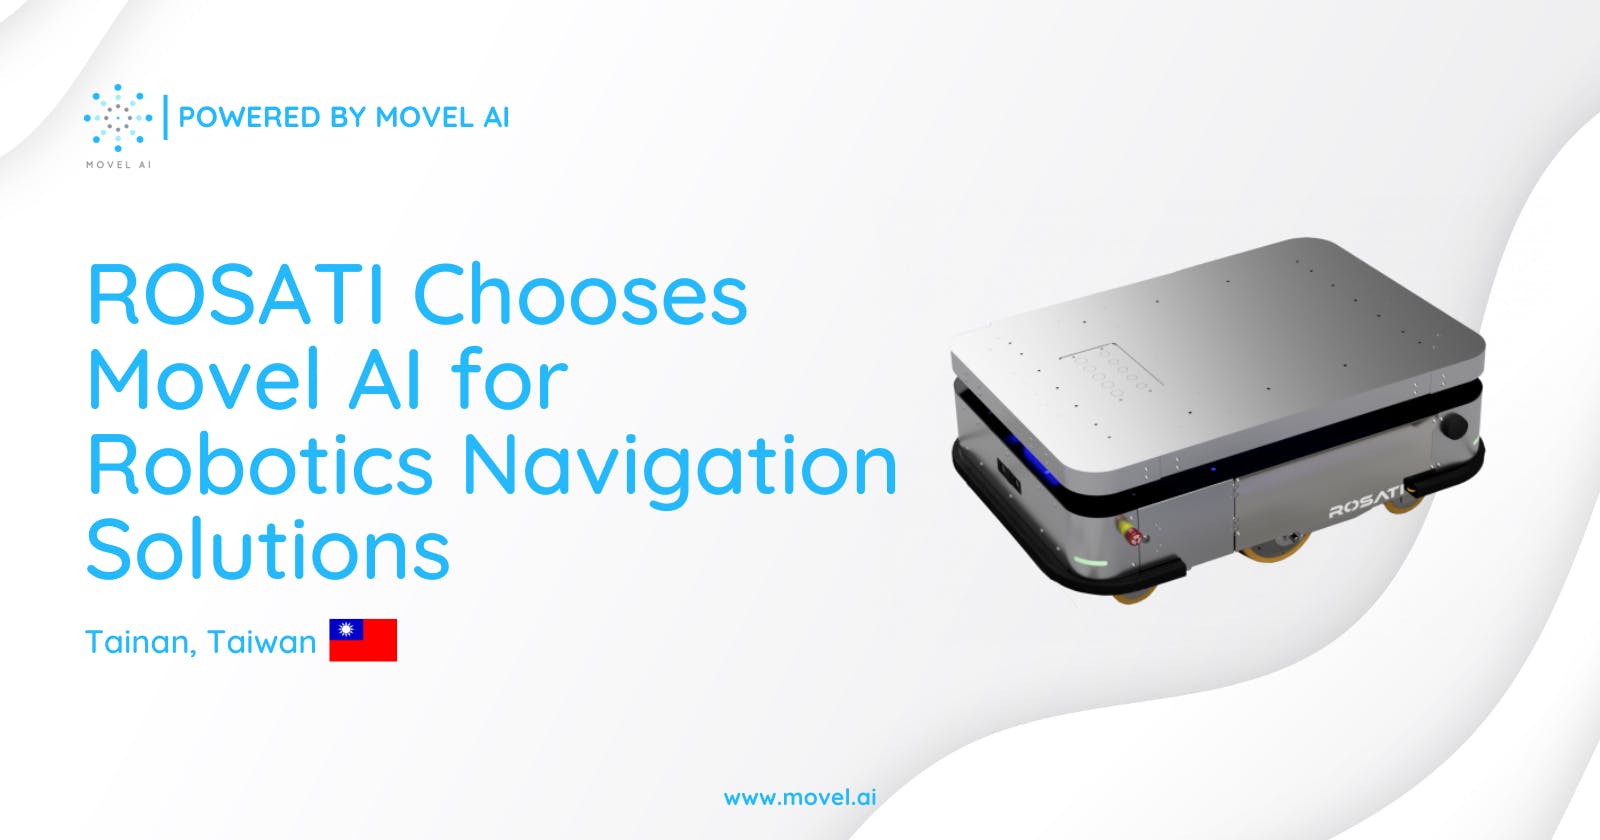 ROSATI Chooses Movel AI for Robotics Navigation Solutions